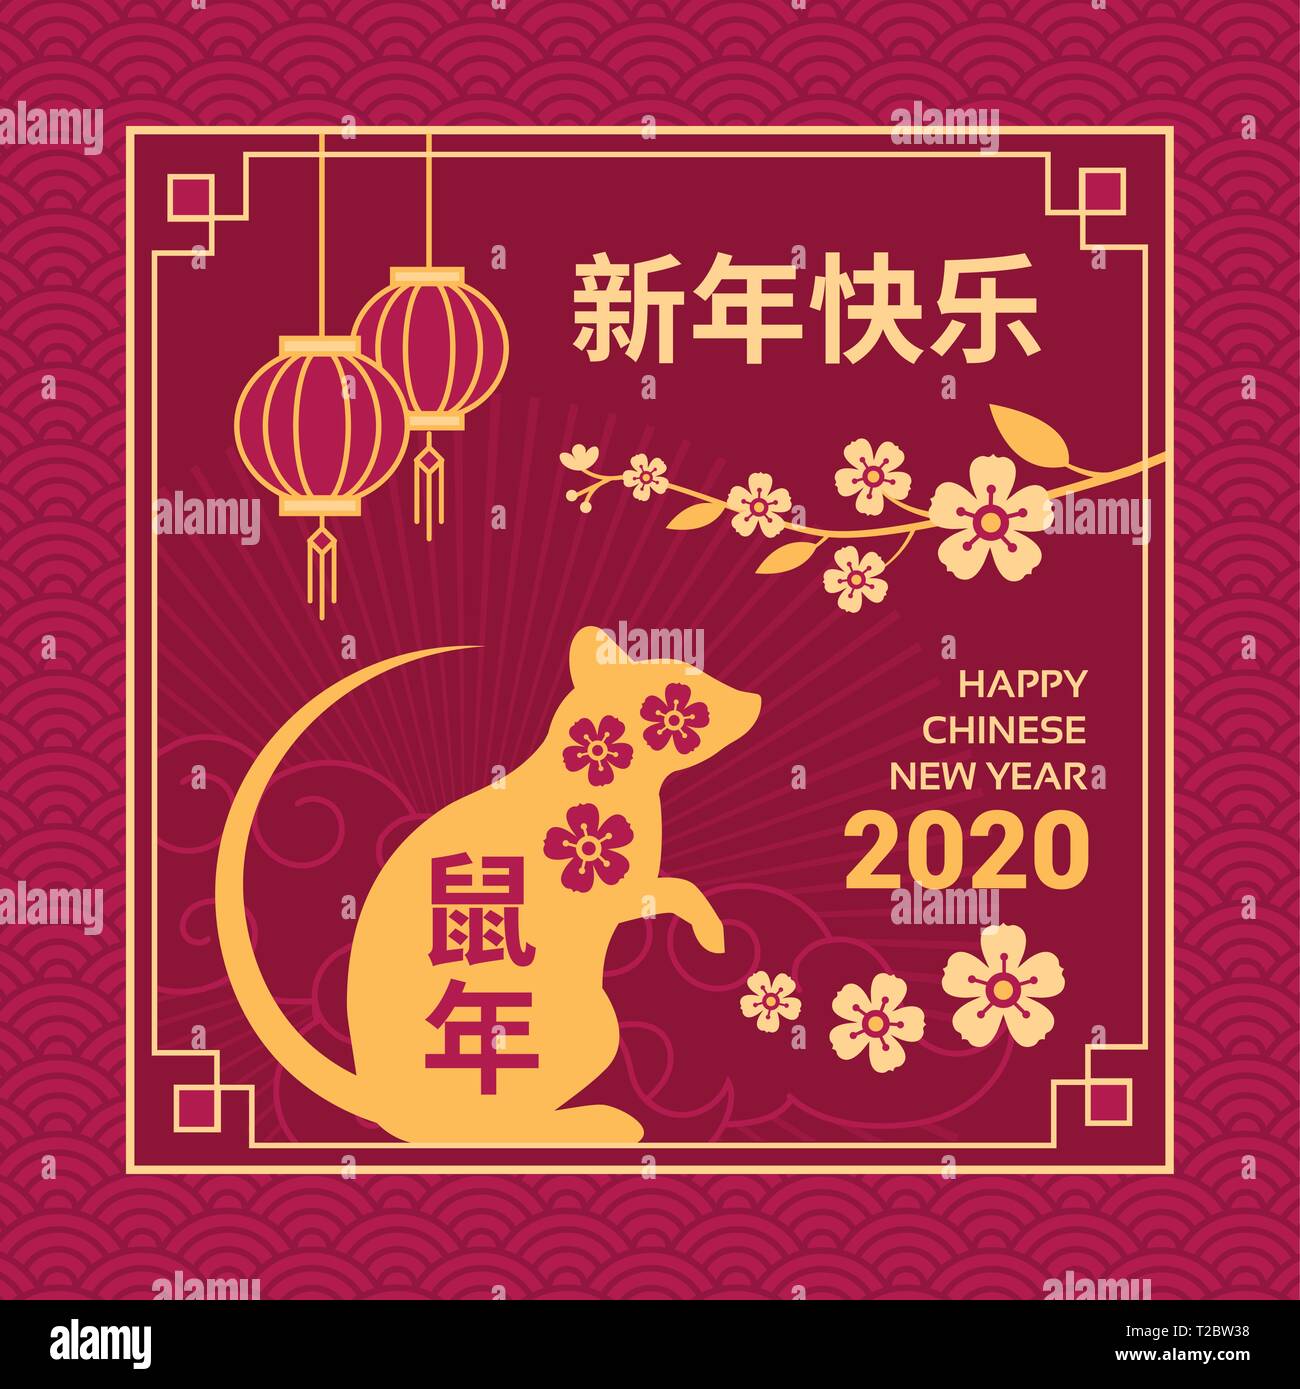 Joyeux Nouvel An chinois carte et médias sociaux post avec rat, oranger fleurs et lampions rouges Illustration de Vecteur